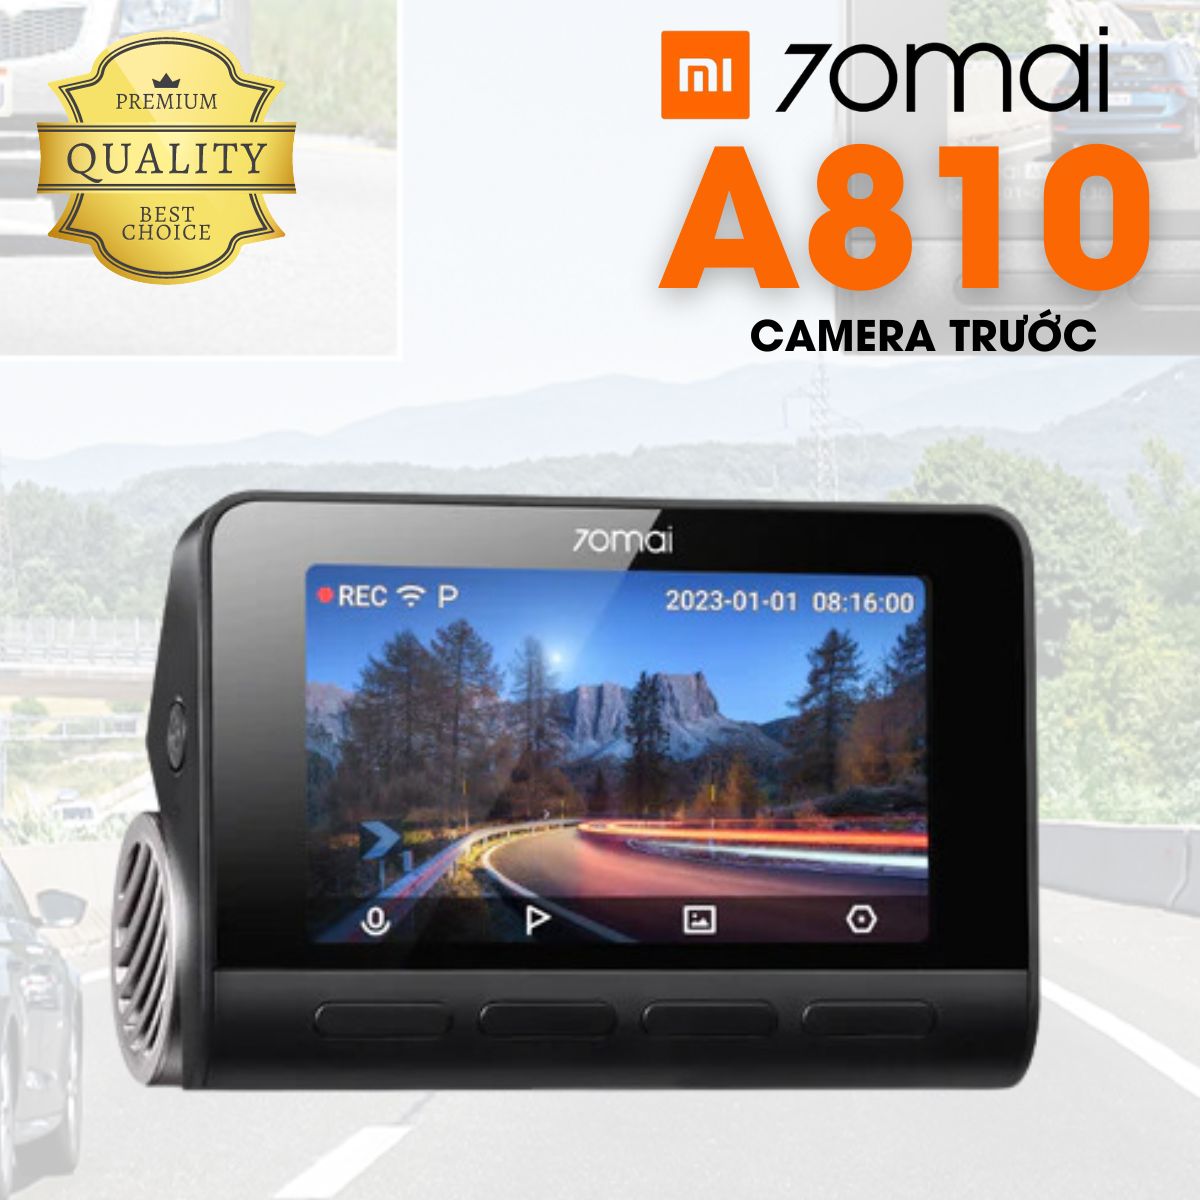 Camera ô tô giám sát hành trình 70mai A810 (bản trước), tích hợp GPS, giám sát đỗ xe 24h